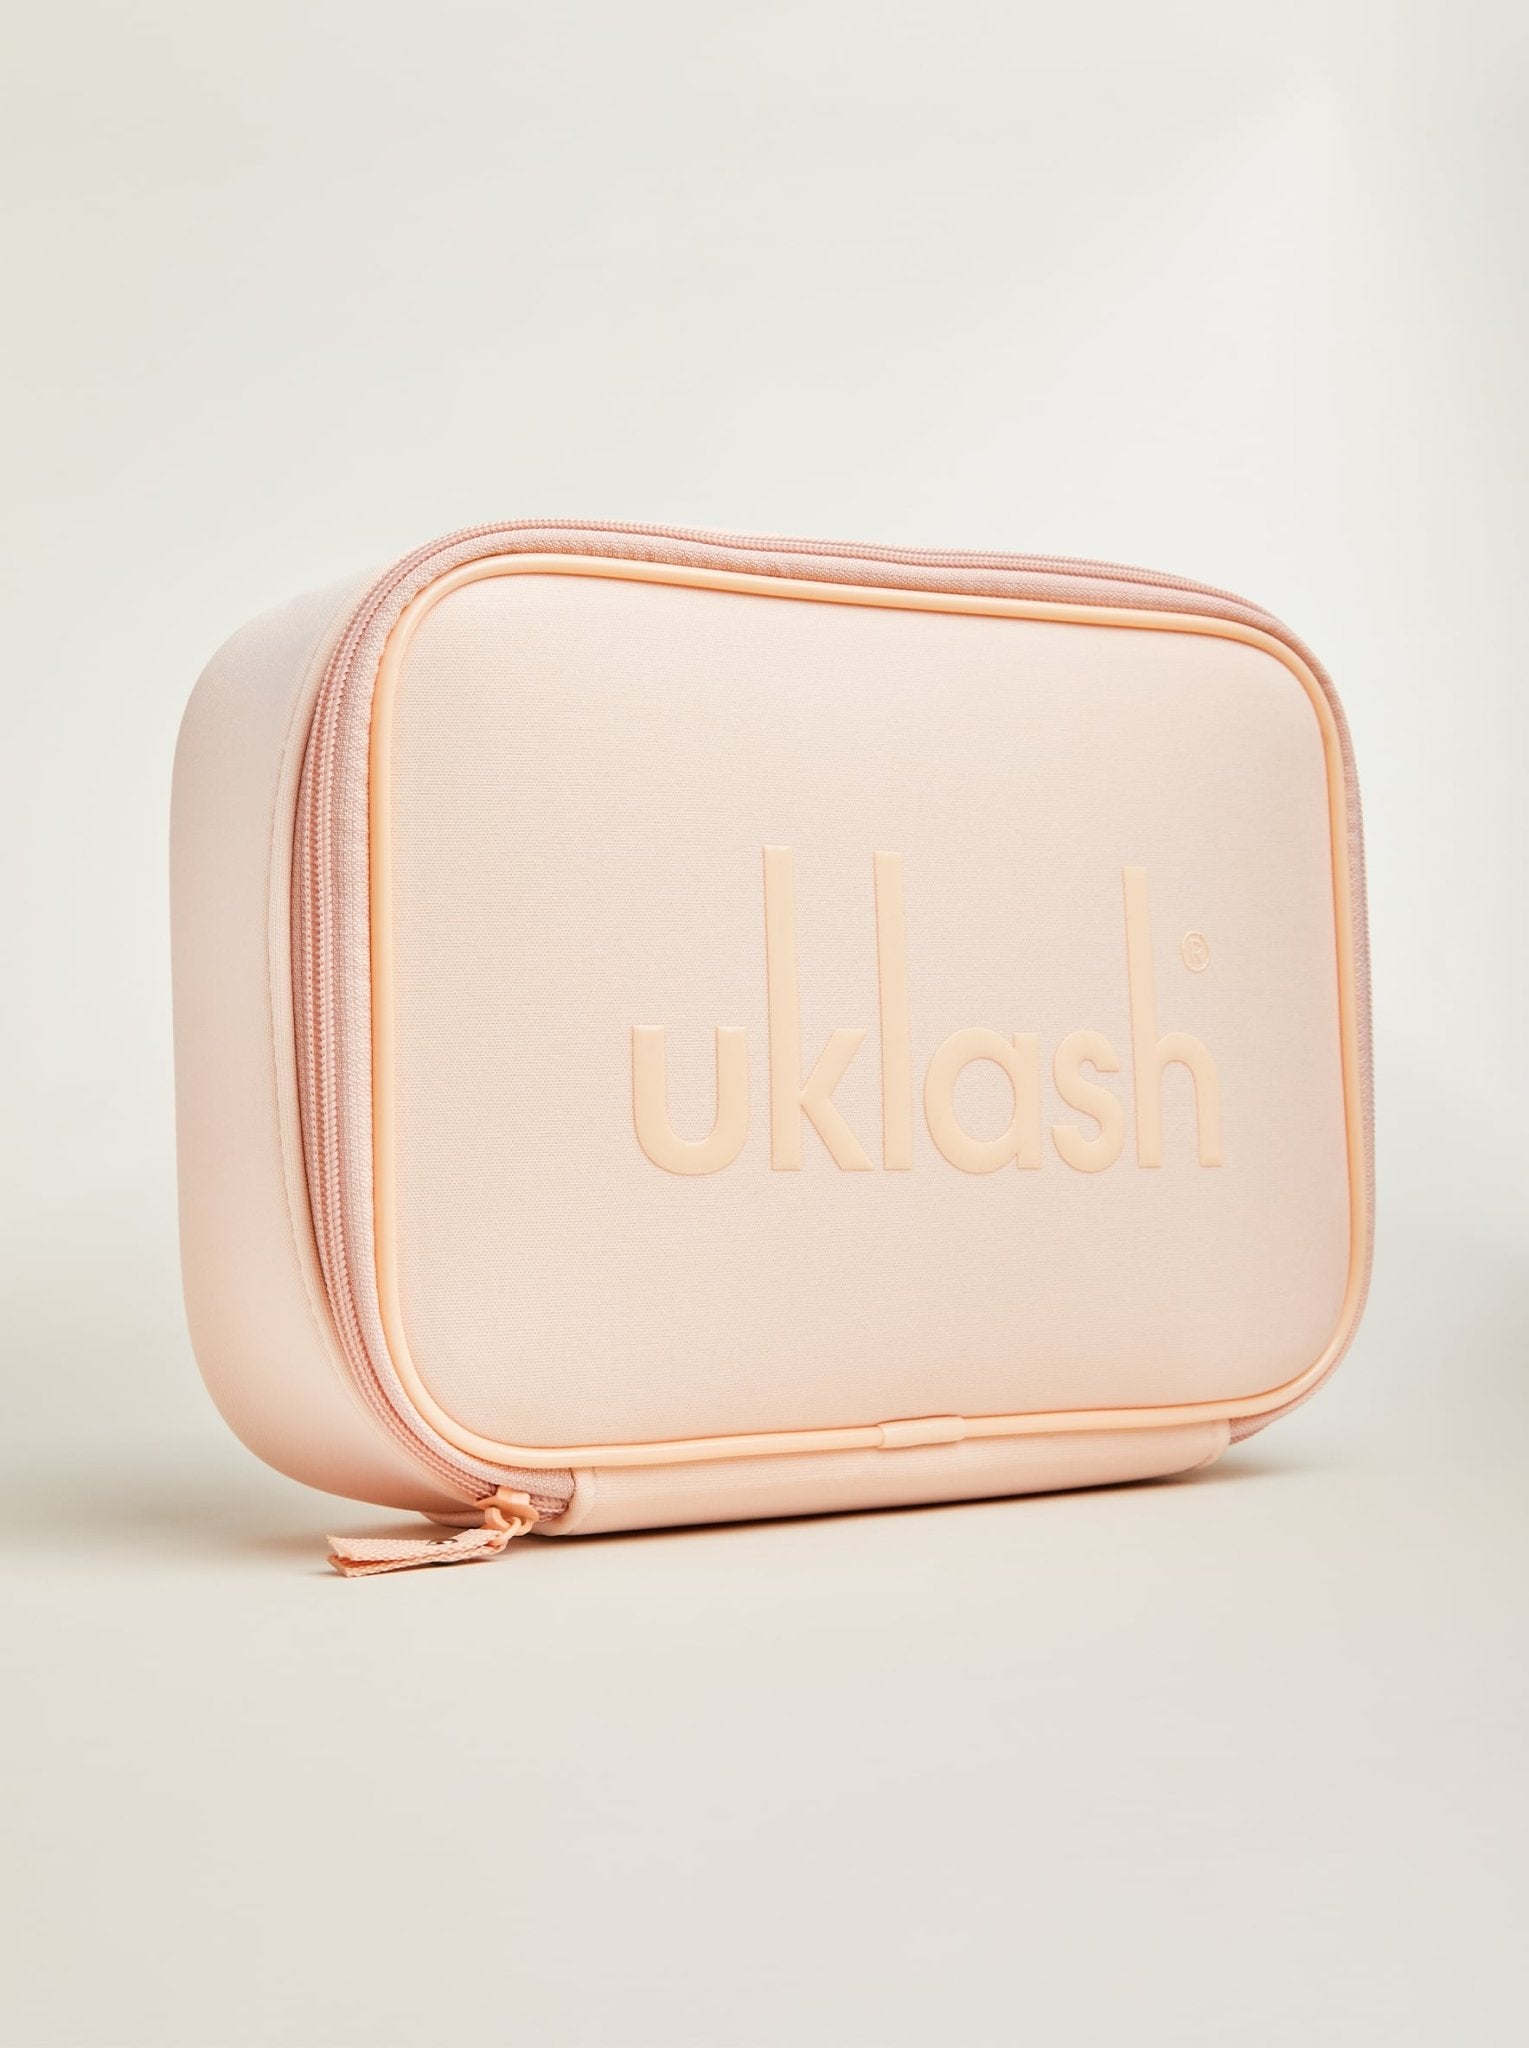 Beauty Bag - UKLASH